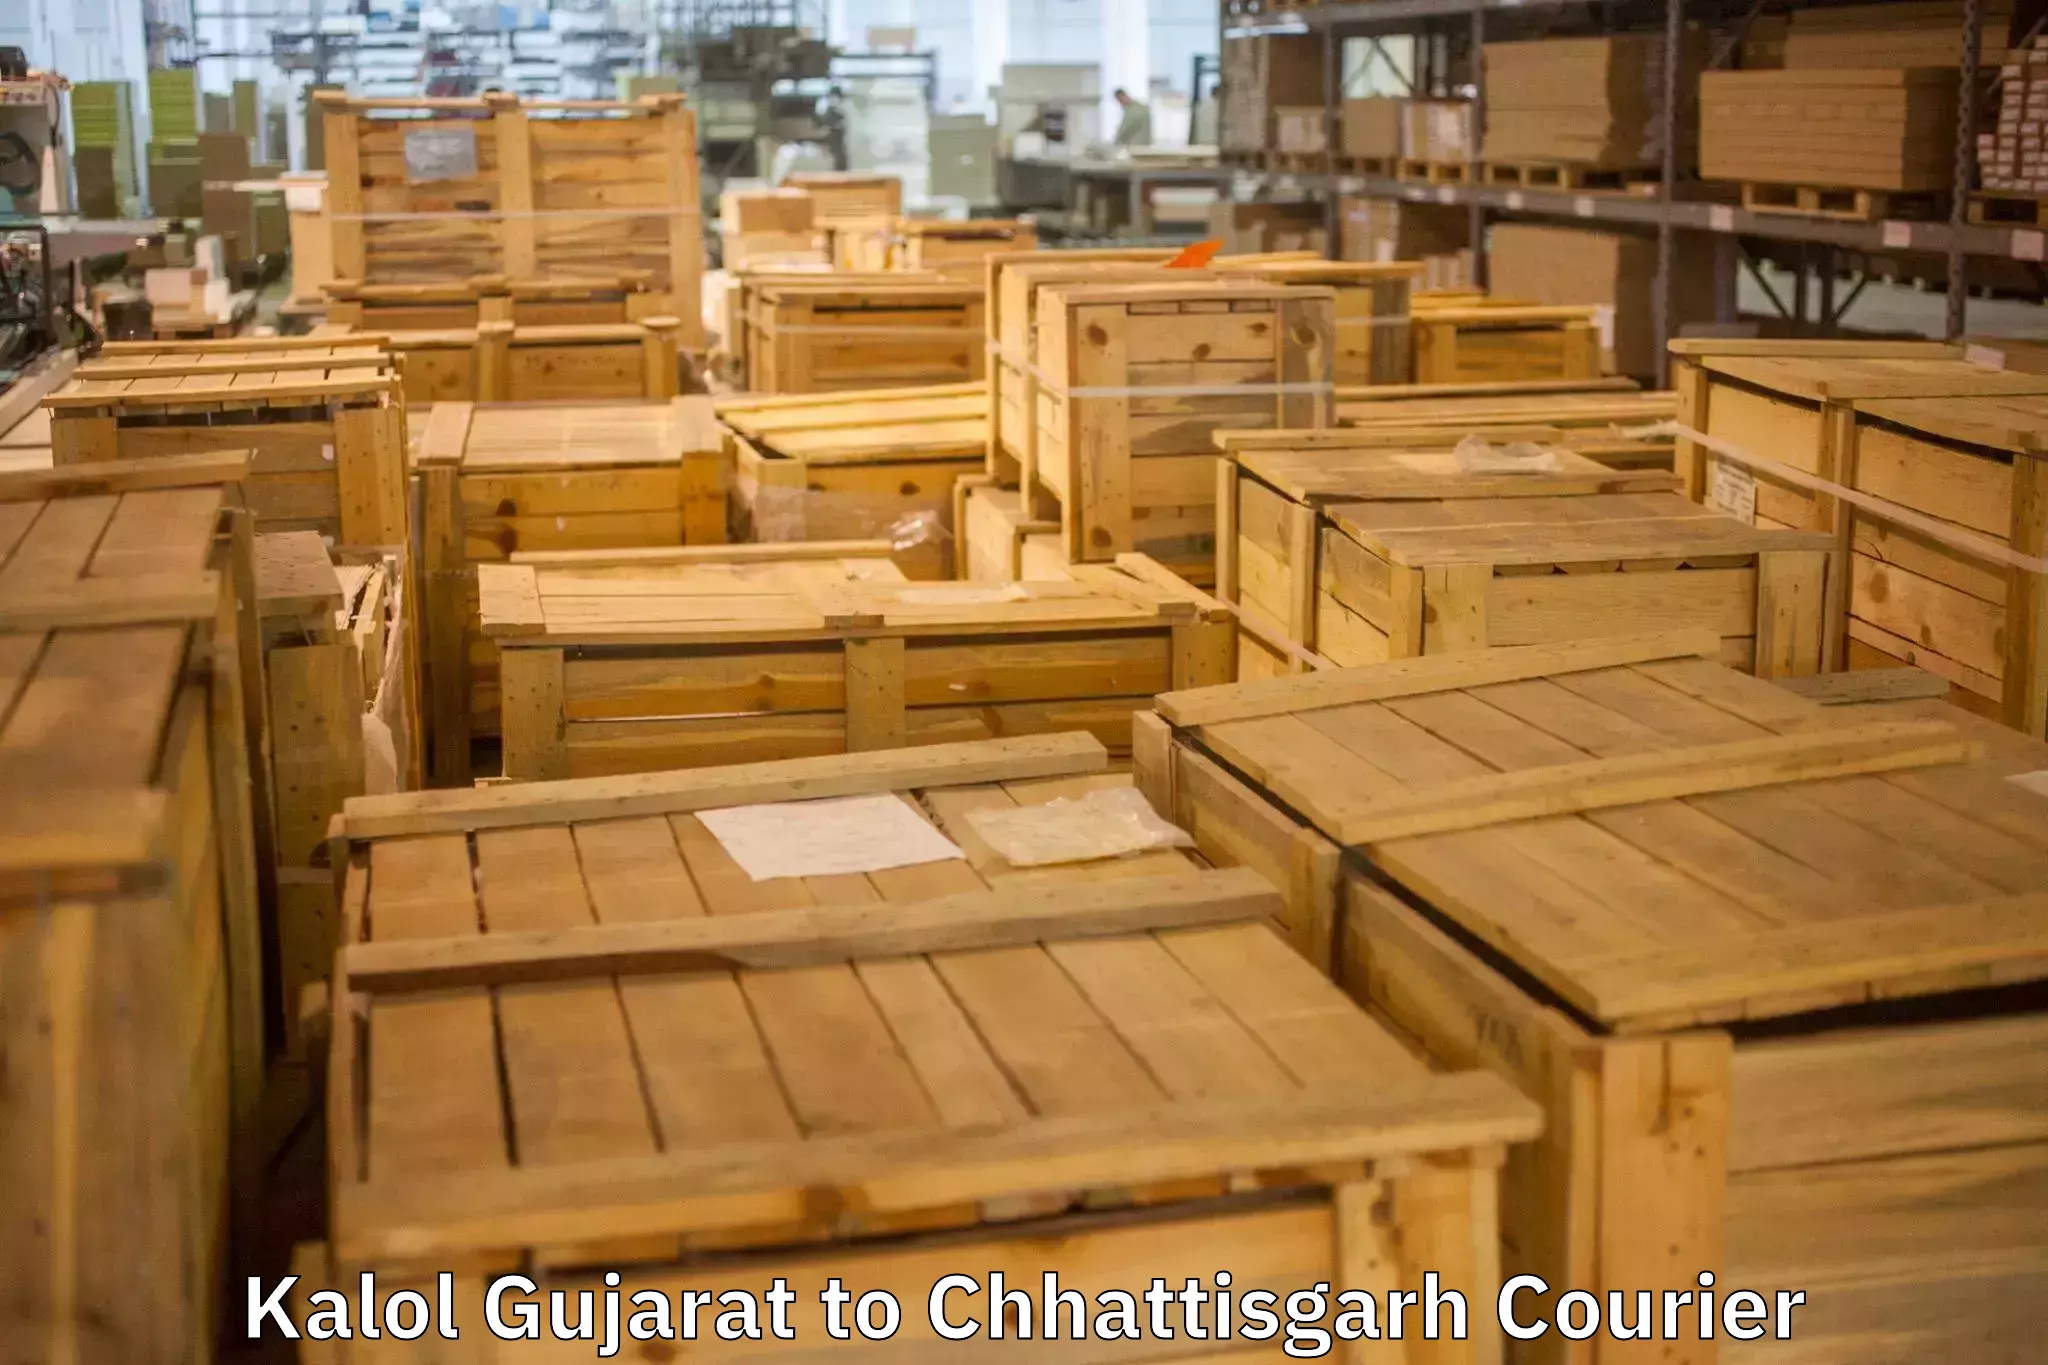 Furniture transport specialists Kalol Gujarat to Surguja